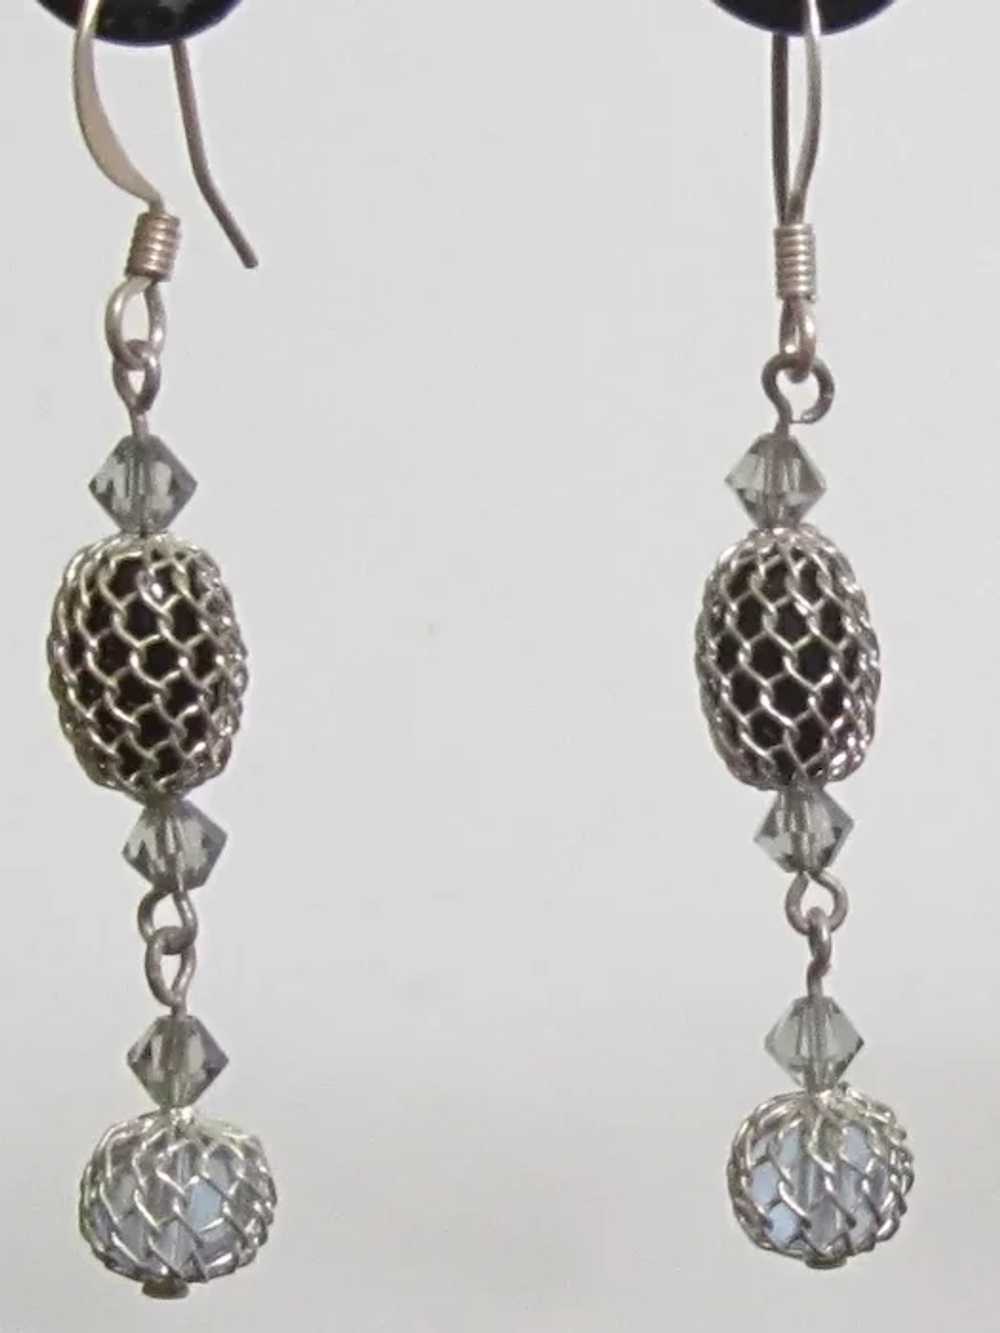 Vintage Silver Tone Dangle Earrings - image 2